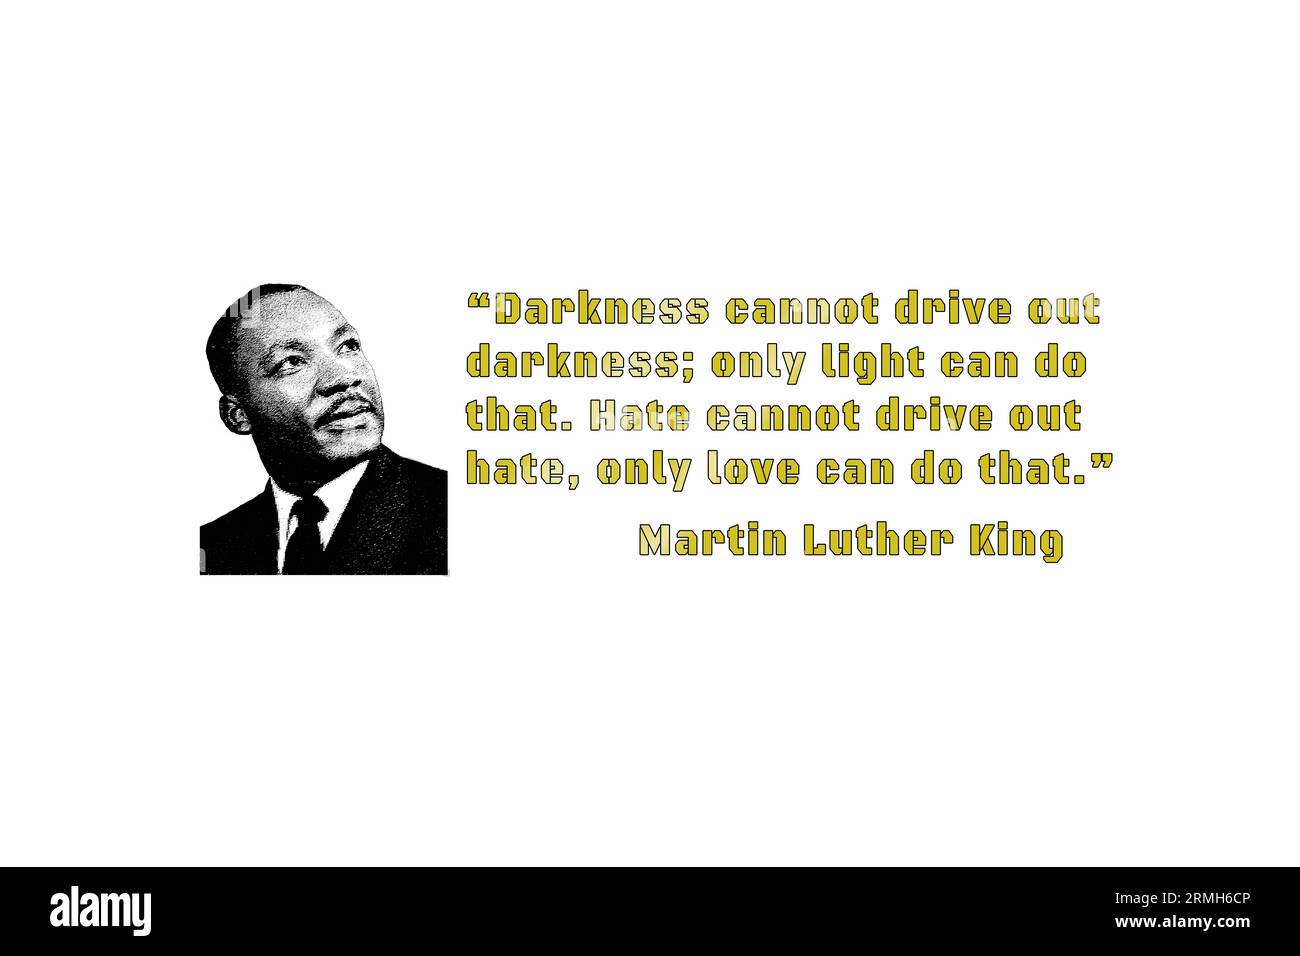 Martin Luther King Jr. Avec un graphisme personnalisé, le prix nobel de la paix, en aucune façon, diffusons les mots de paix : les ténèbres ne peuvent pas sortir des ténèbres... Banque D'Images